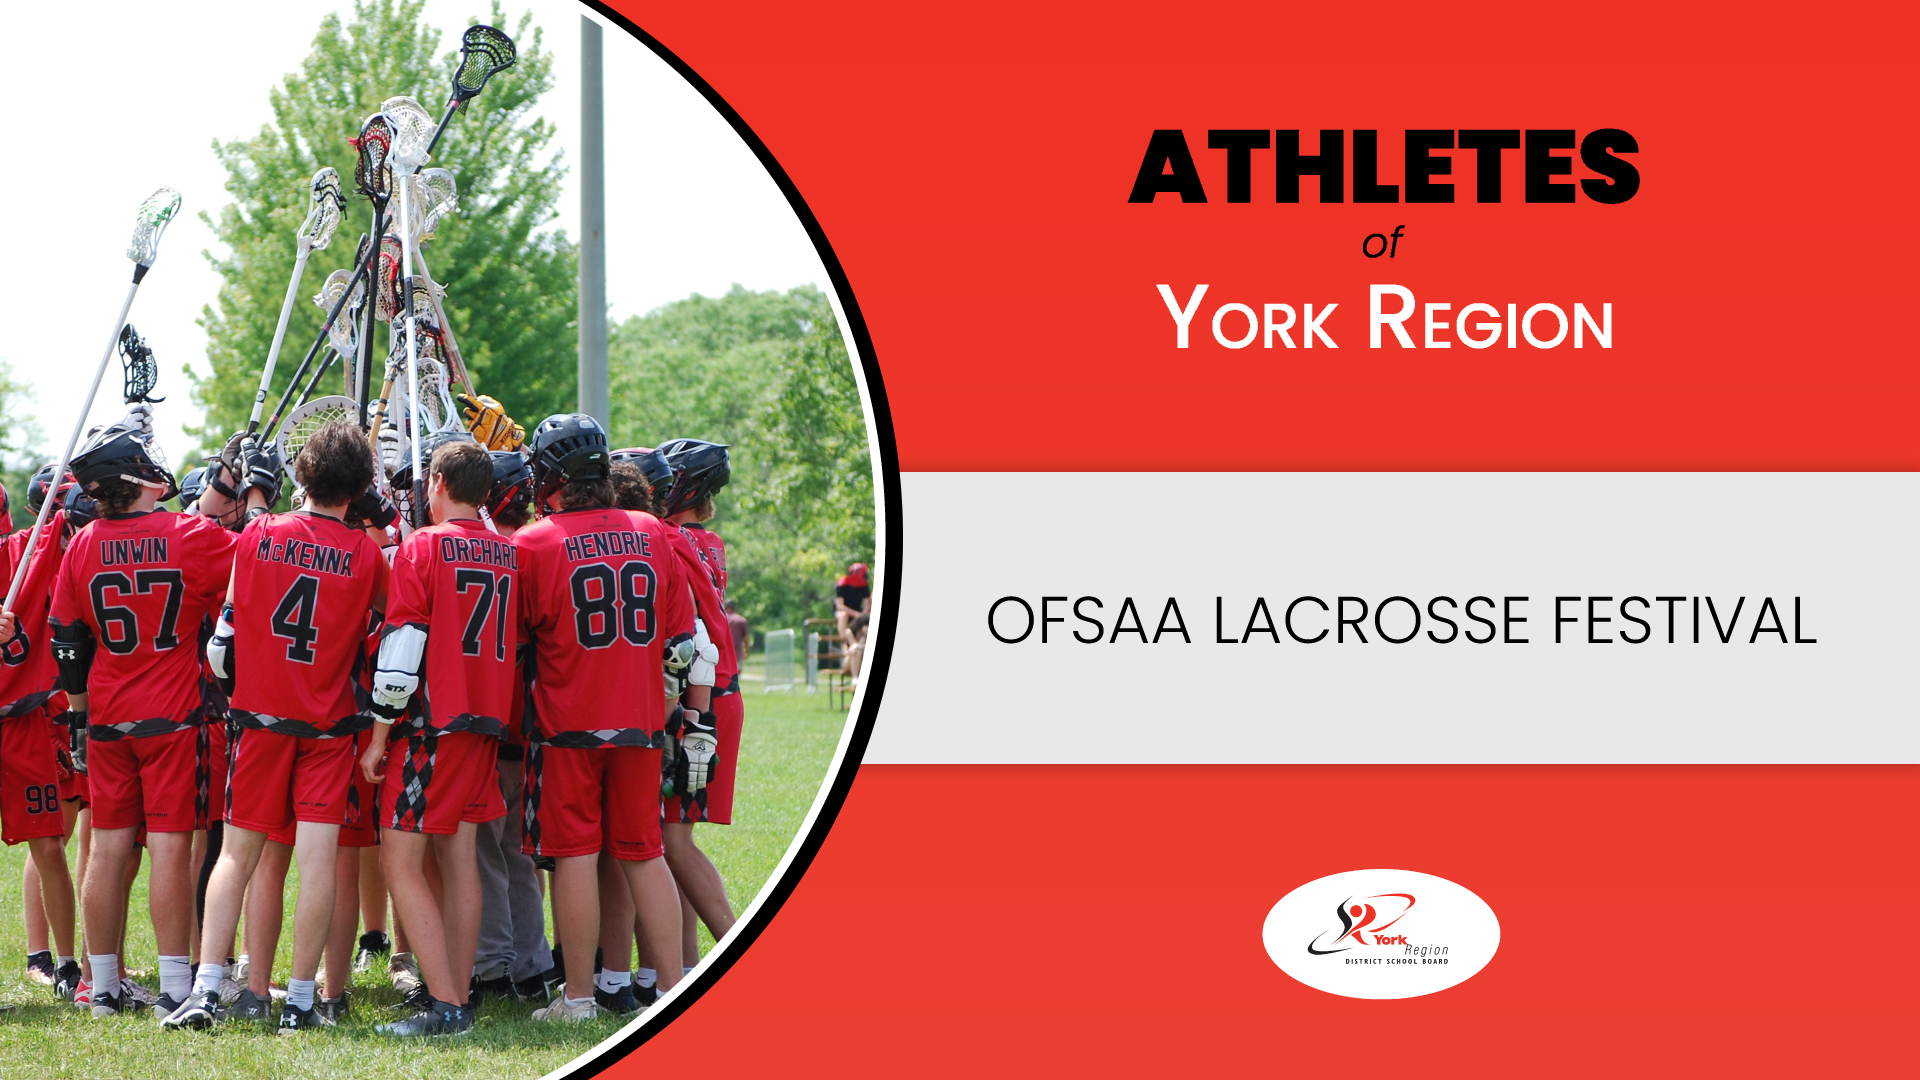 Athletes of York Region - OFSAA Lacrosse Festival